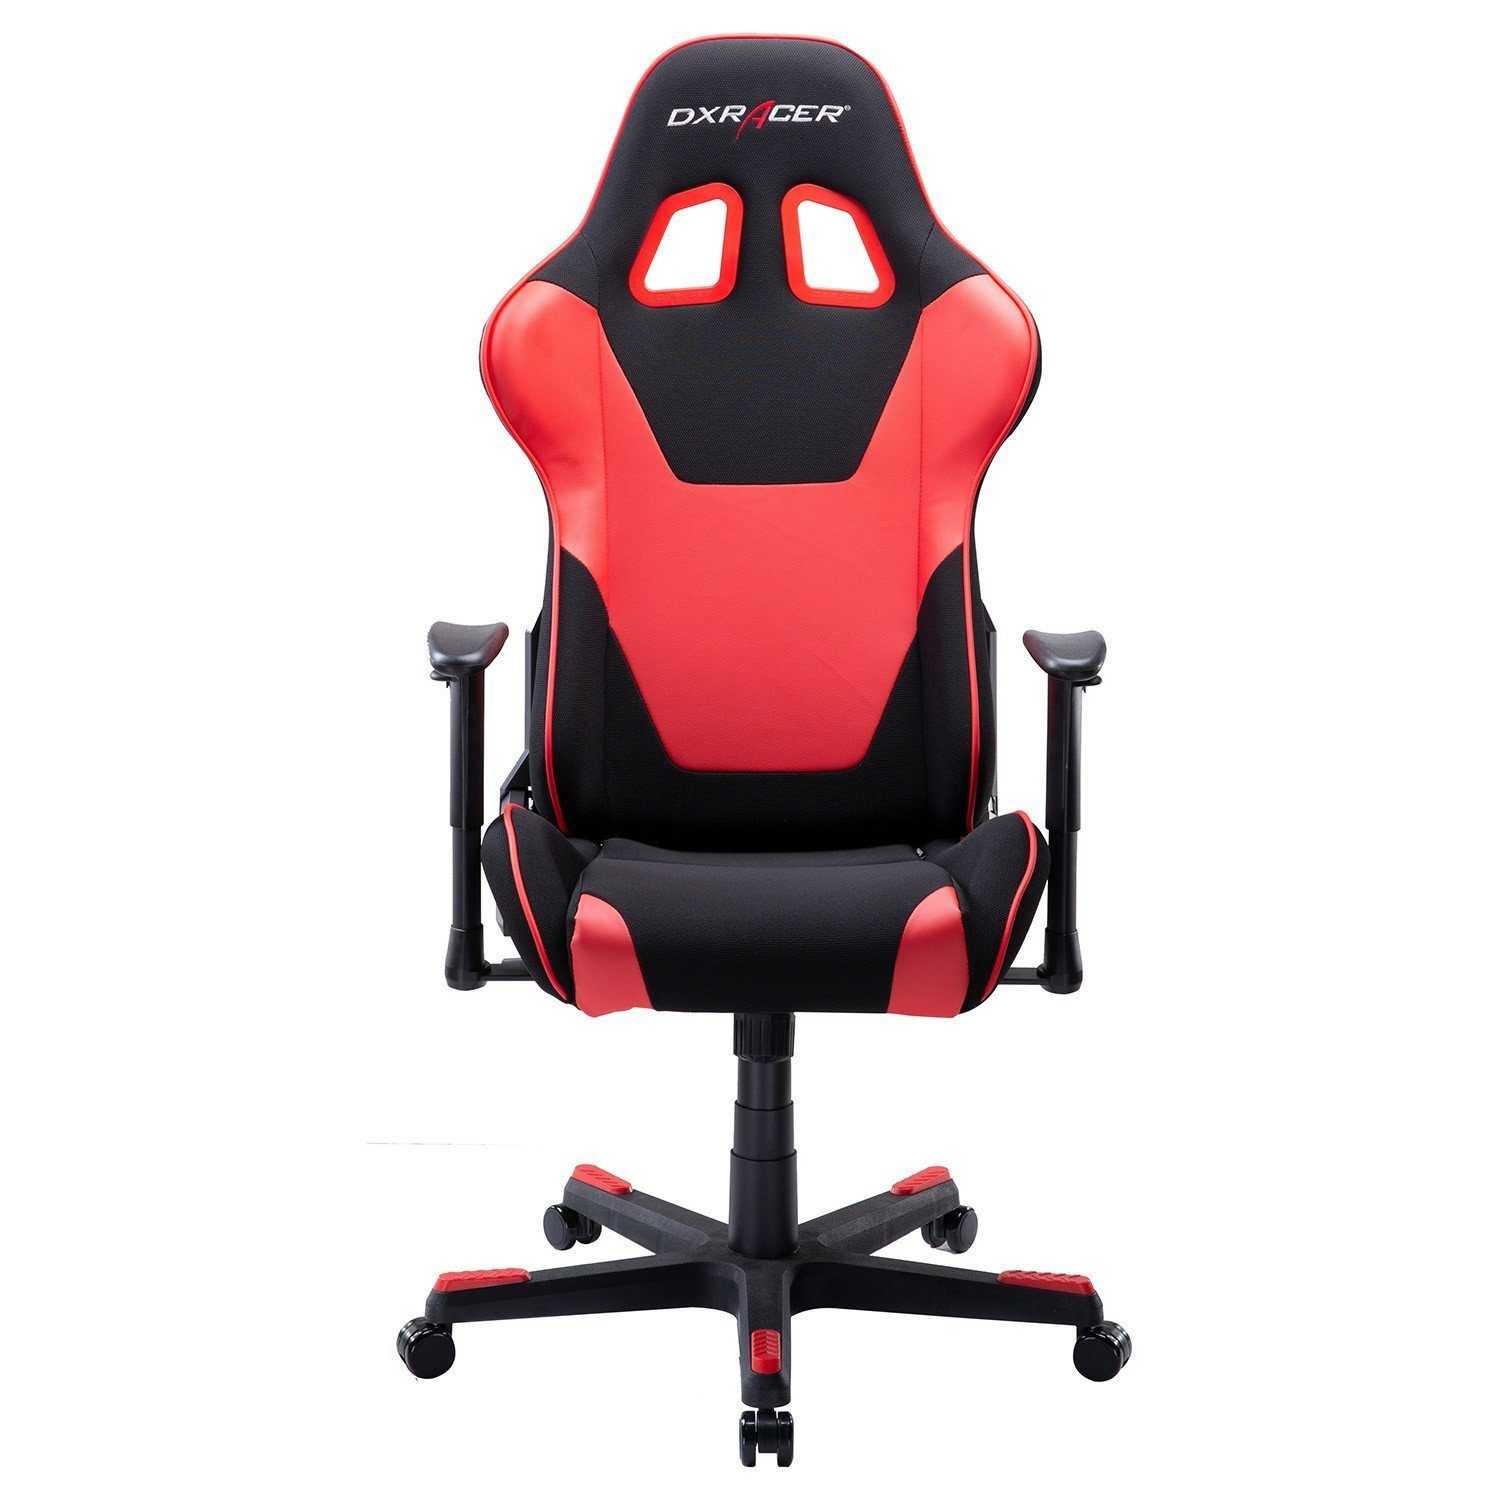 Кресла red square: игровые компьютерные геймерские модели